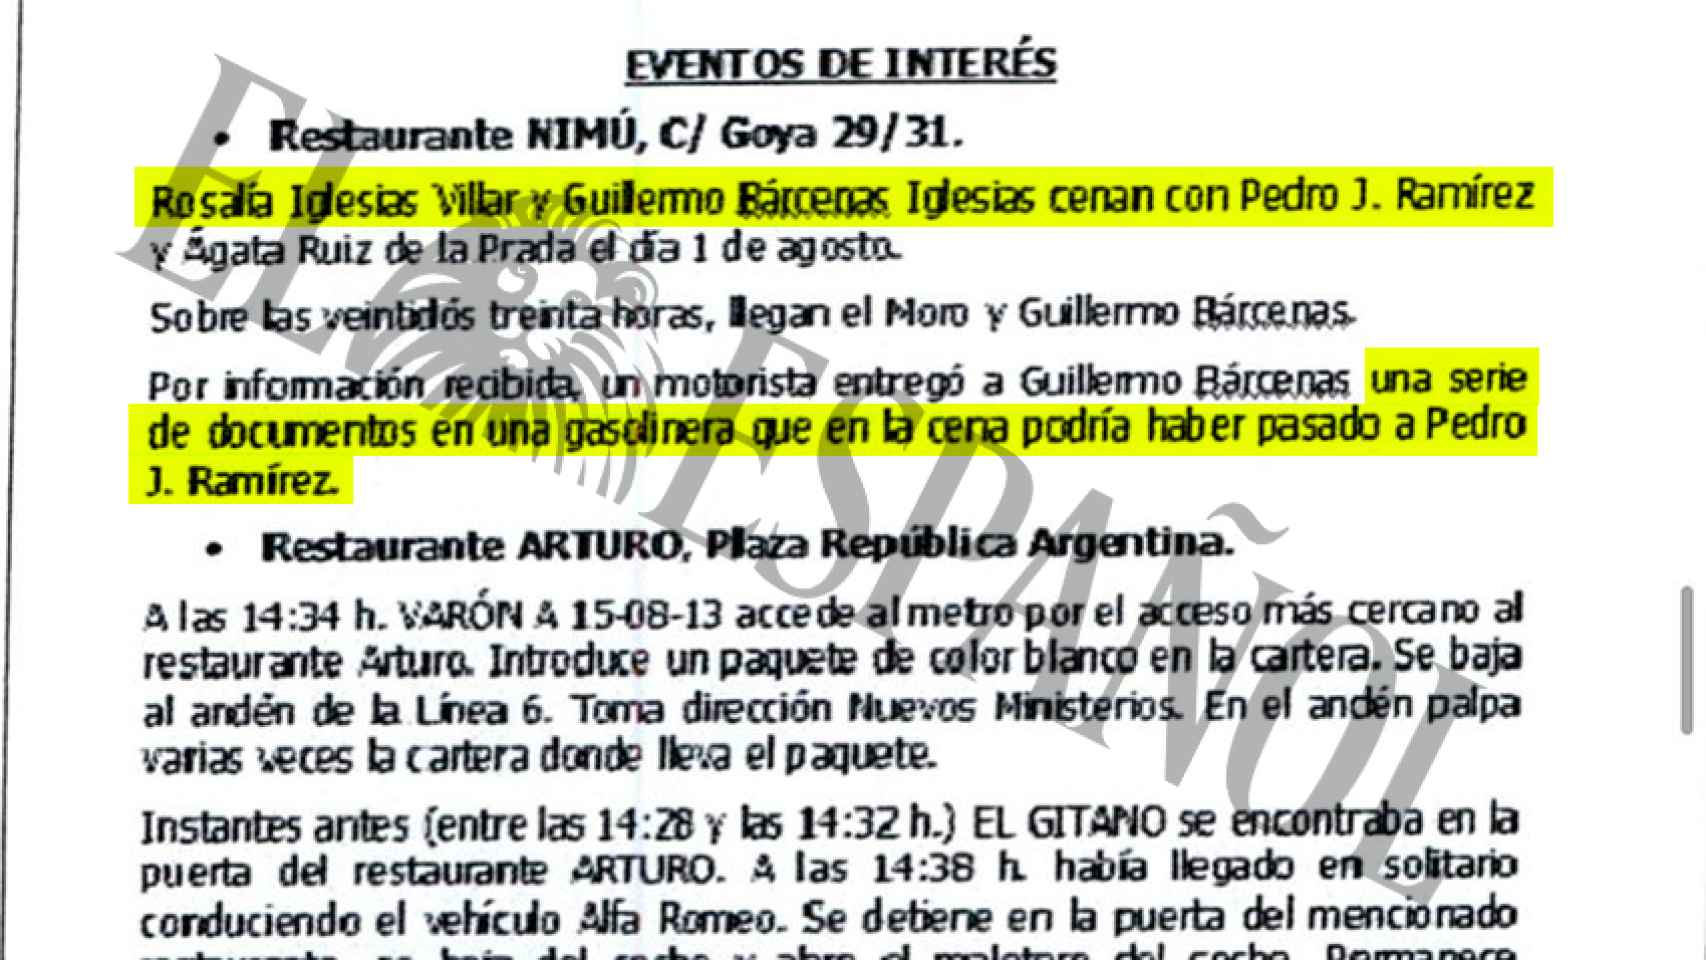 Documentación que acredita los seguimientos a Pedro J. Ramírez.